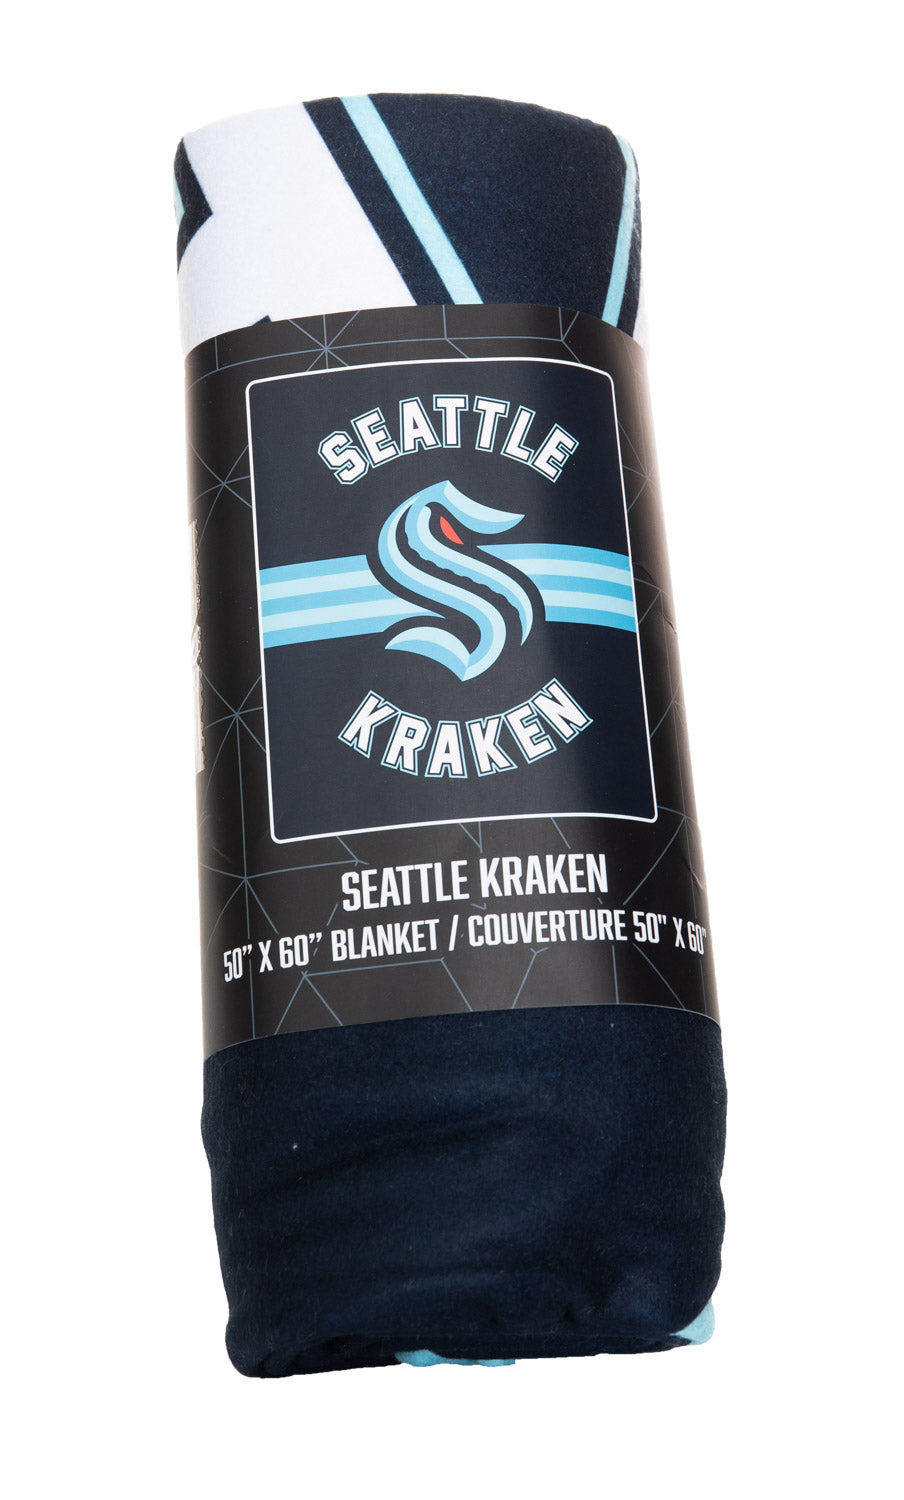 NHL licensed Seattle Kraken Beach Blanket